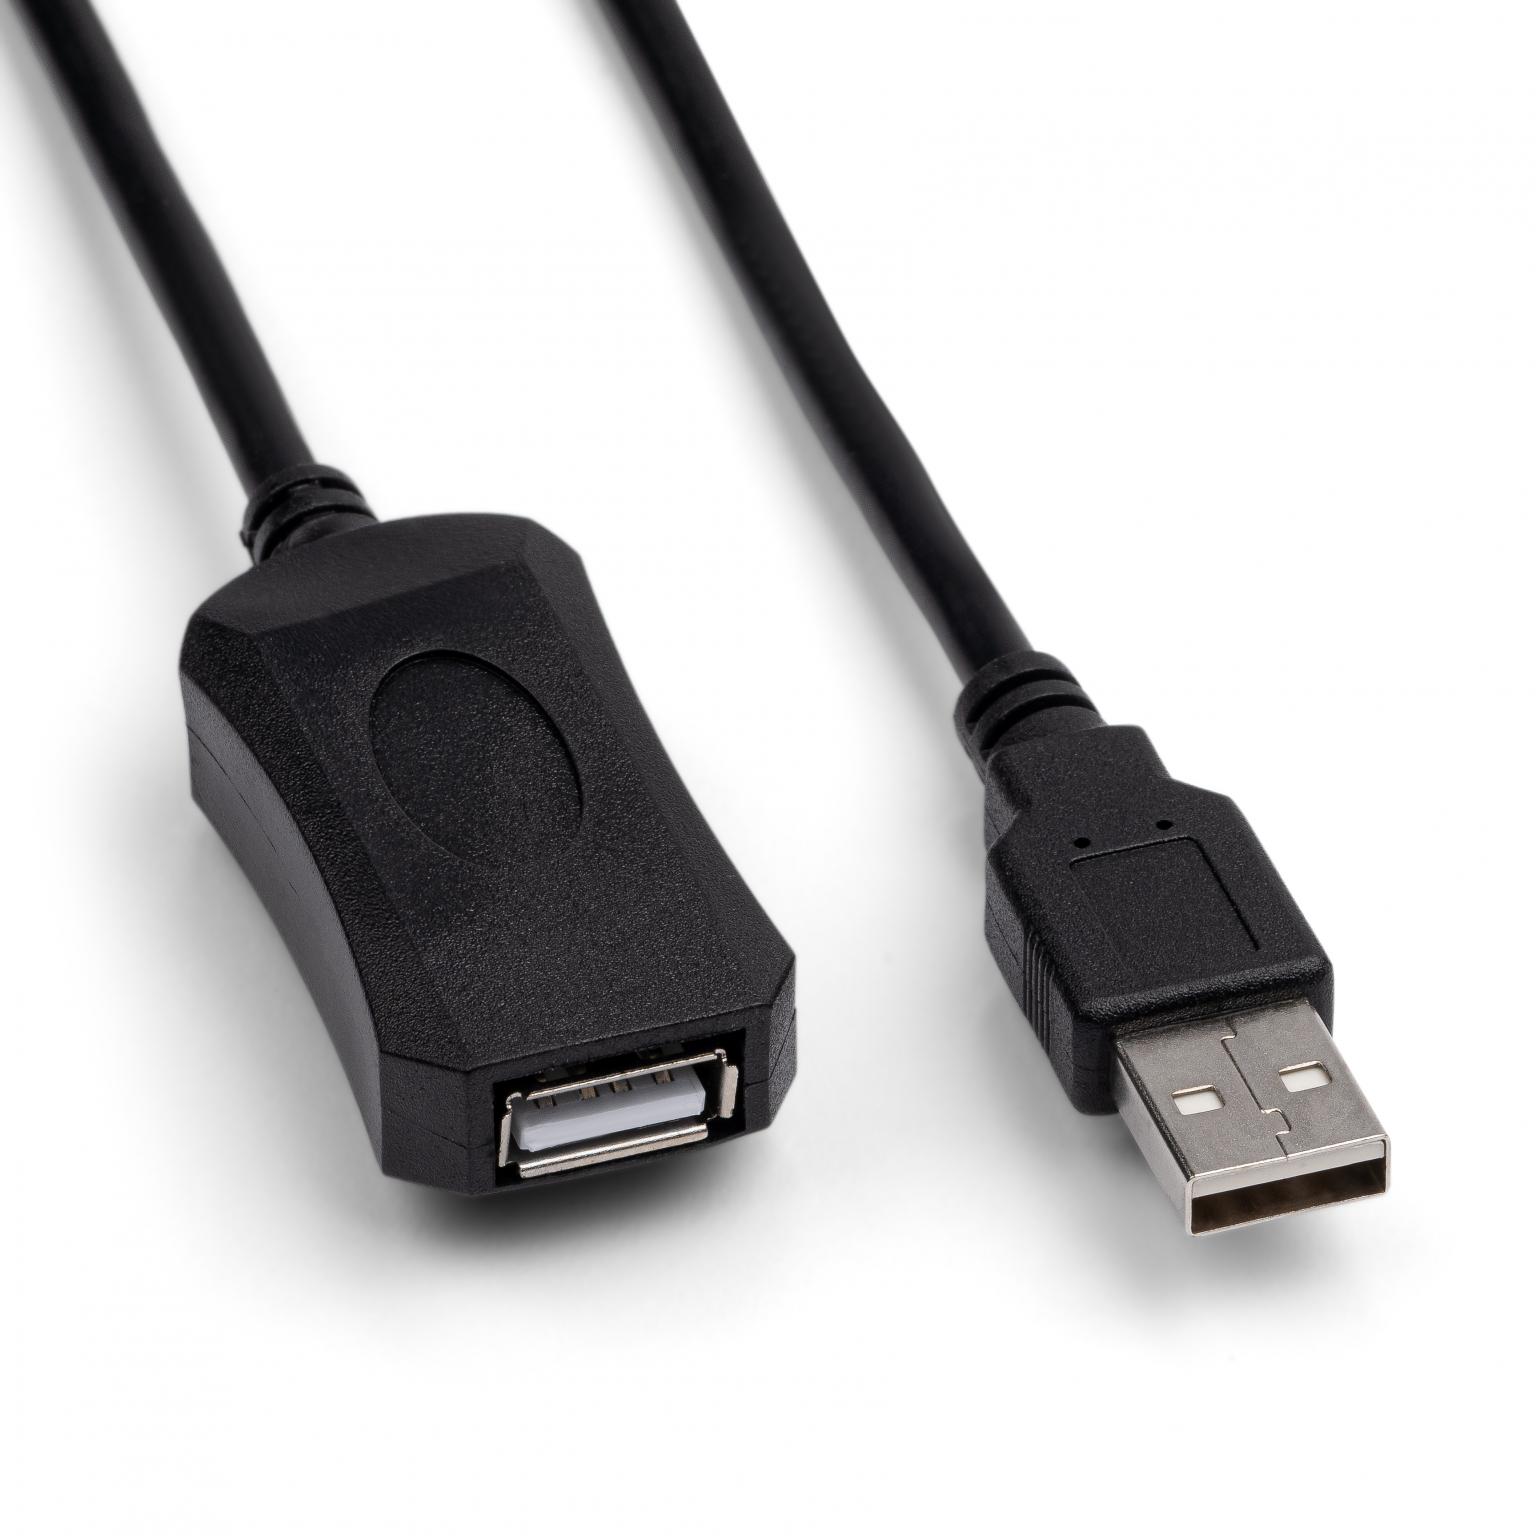 Geef rechten Taille verbergen USB 2.0 Verlengkabel + Versterker - USB 2.0 verlengkabel met versterker,  Connector 1: USB A male, Connector 2: USB A female, 5 meter.